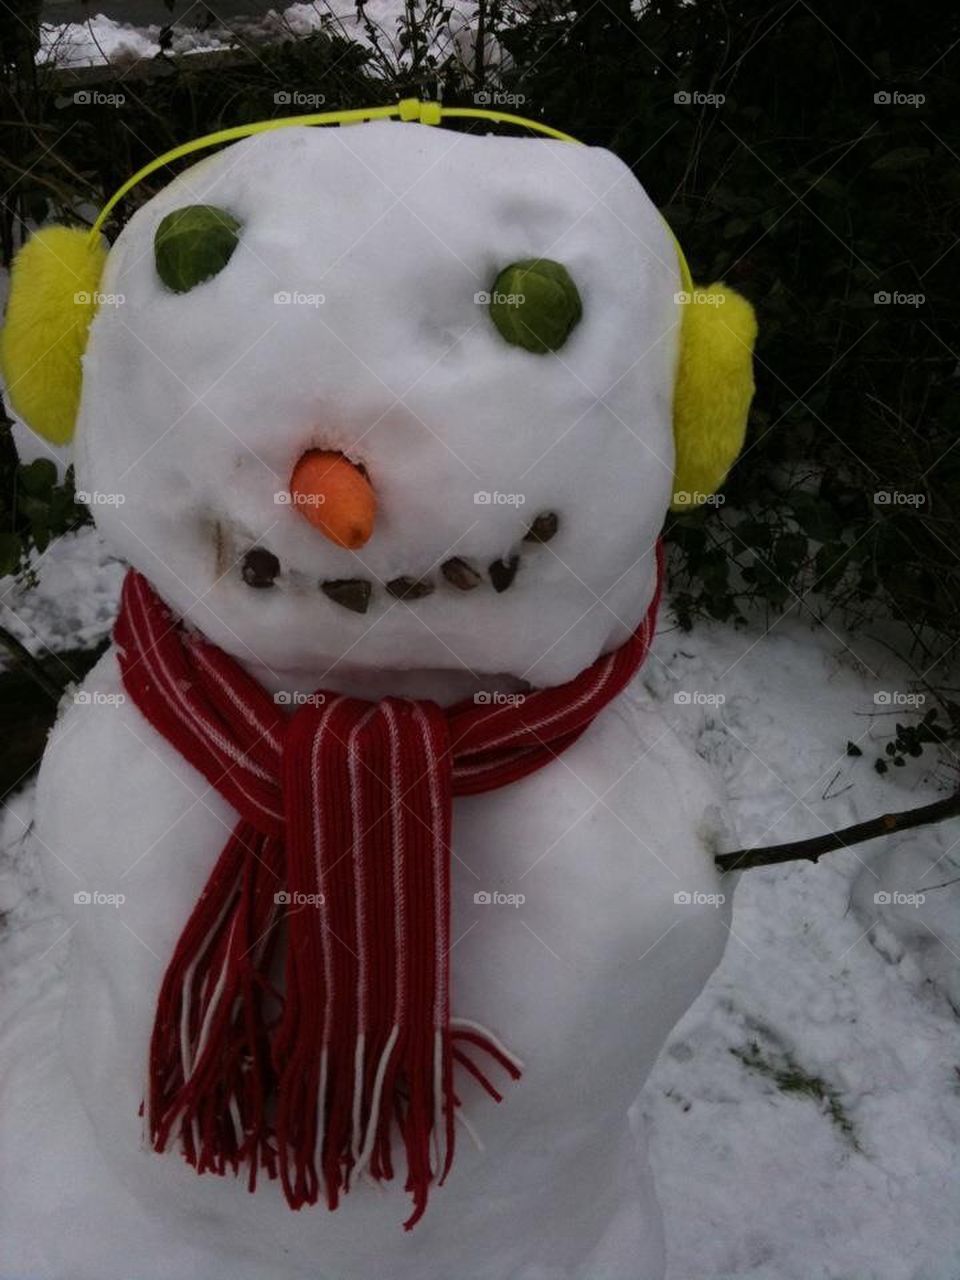 Snow man 2012